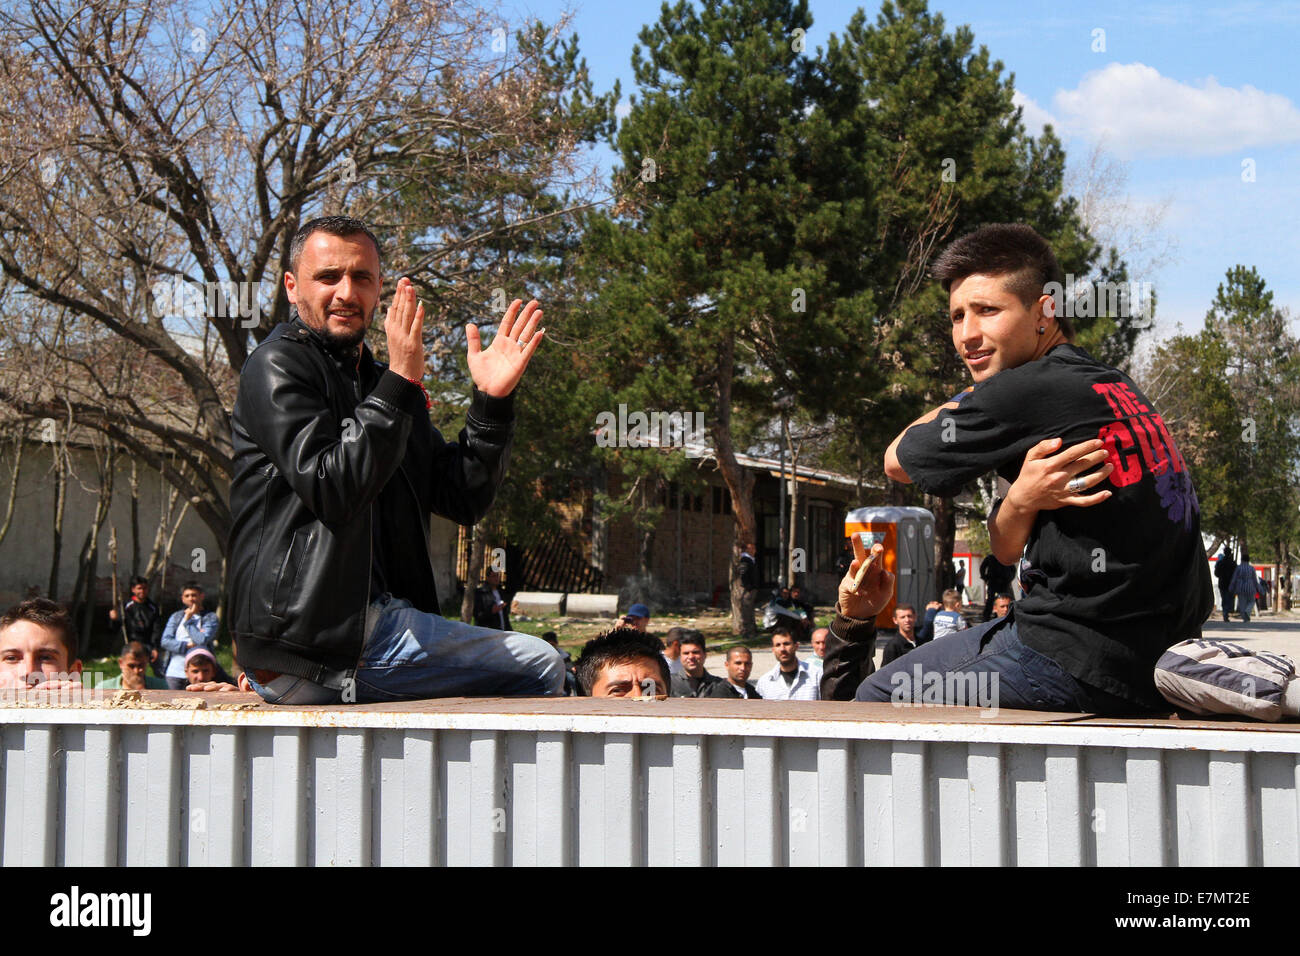 Syriens et d'autres réfugiés de protester contre un camp près de la ville de Harmanli, à l'est de la capitale bulgare Sofia, Mardi, Mars, 17, 2014. Une foule d'environ 1 300 réfugiés a grandi en colère au sujet de leur statut de citoyen dans le retard des pays des Balkans et de l'absence de prestations au cours des six derniers mois. Les autorités bulgares sont tenus d'accorder aux réfugiés 65.00 lev bulgare (33,00 EURO) par mois selon la législation de l'UE Où : Harmanli, Bulgarie Quand : 17 Mars 2014 Banque D'Images